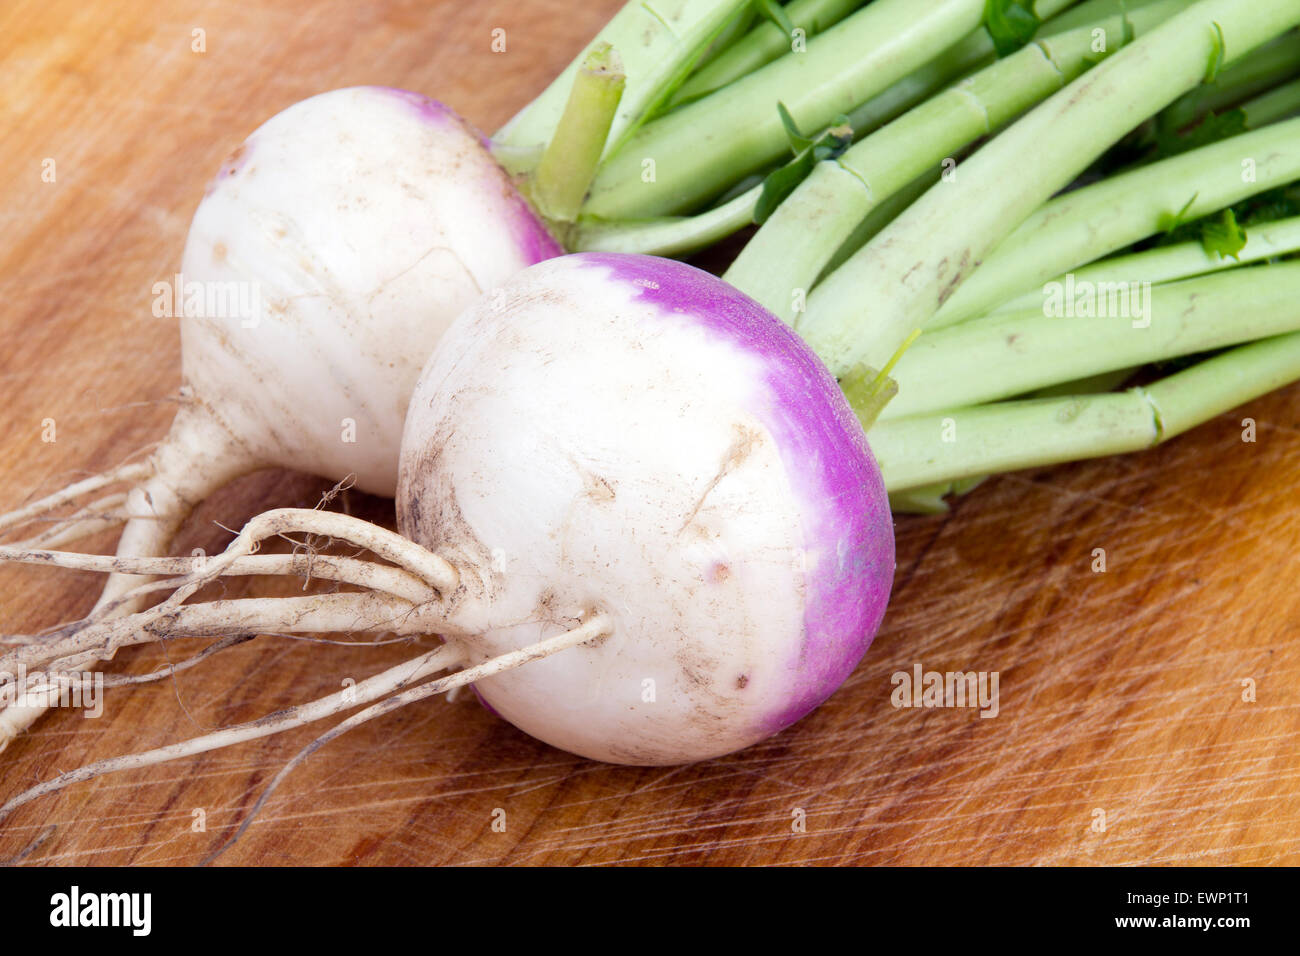 two organic purple top turnip on table Stock Photo